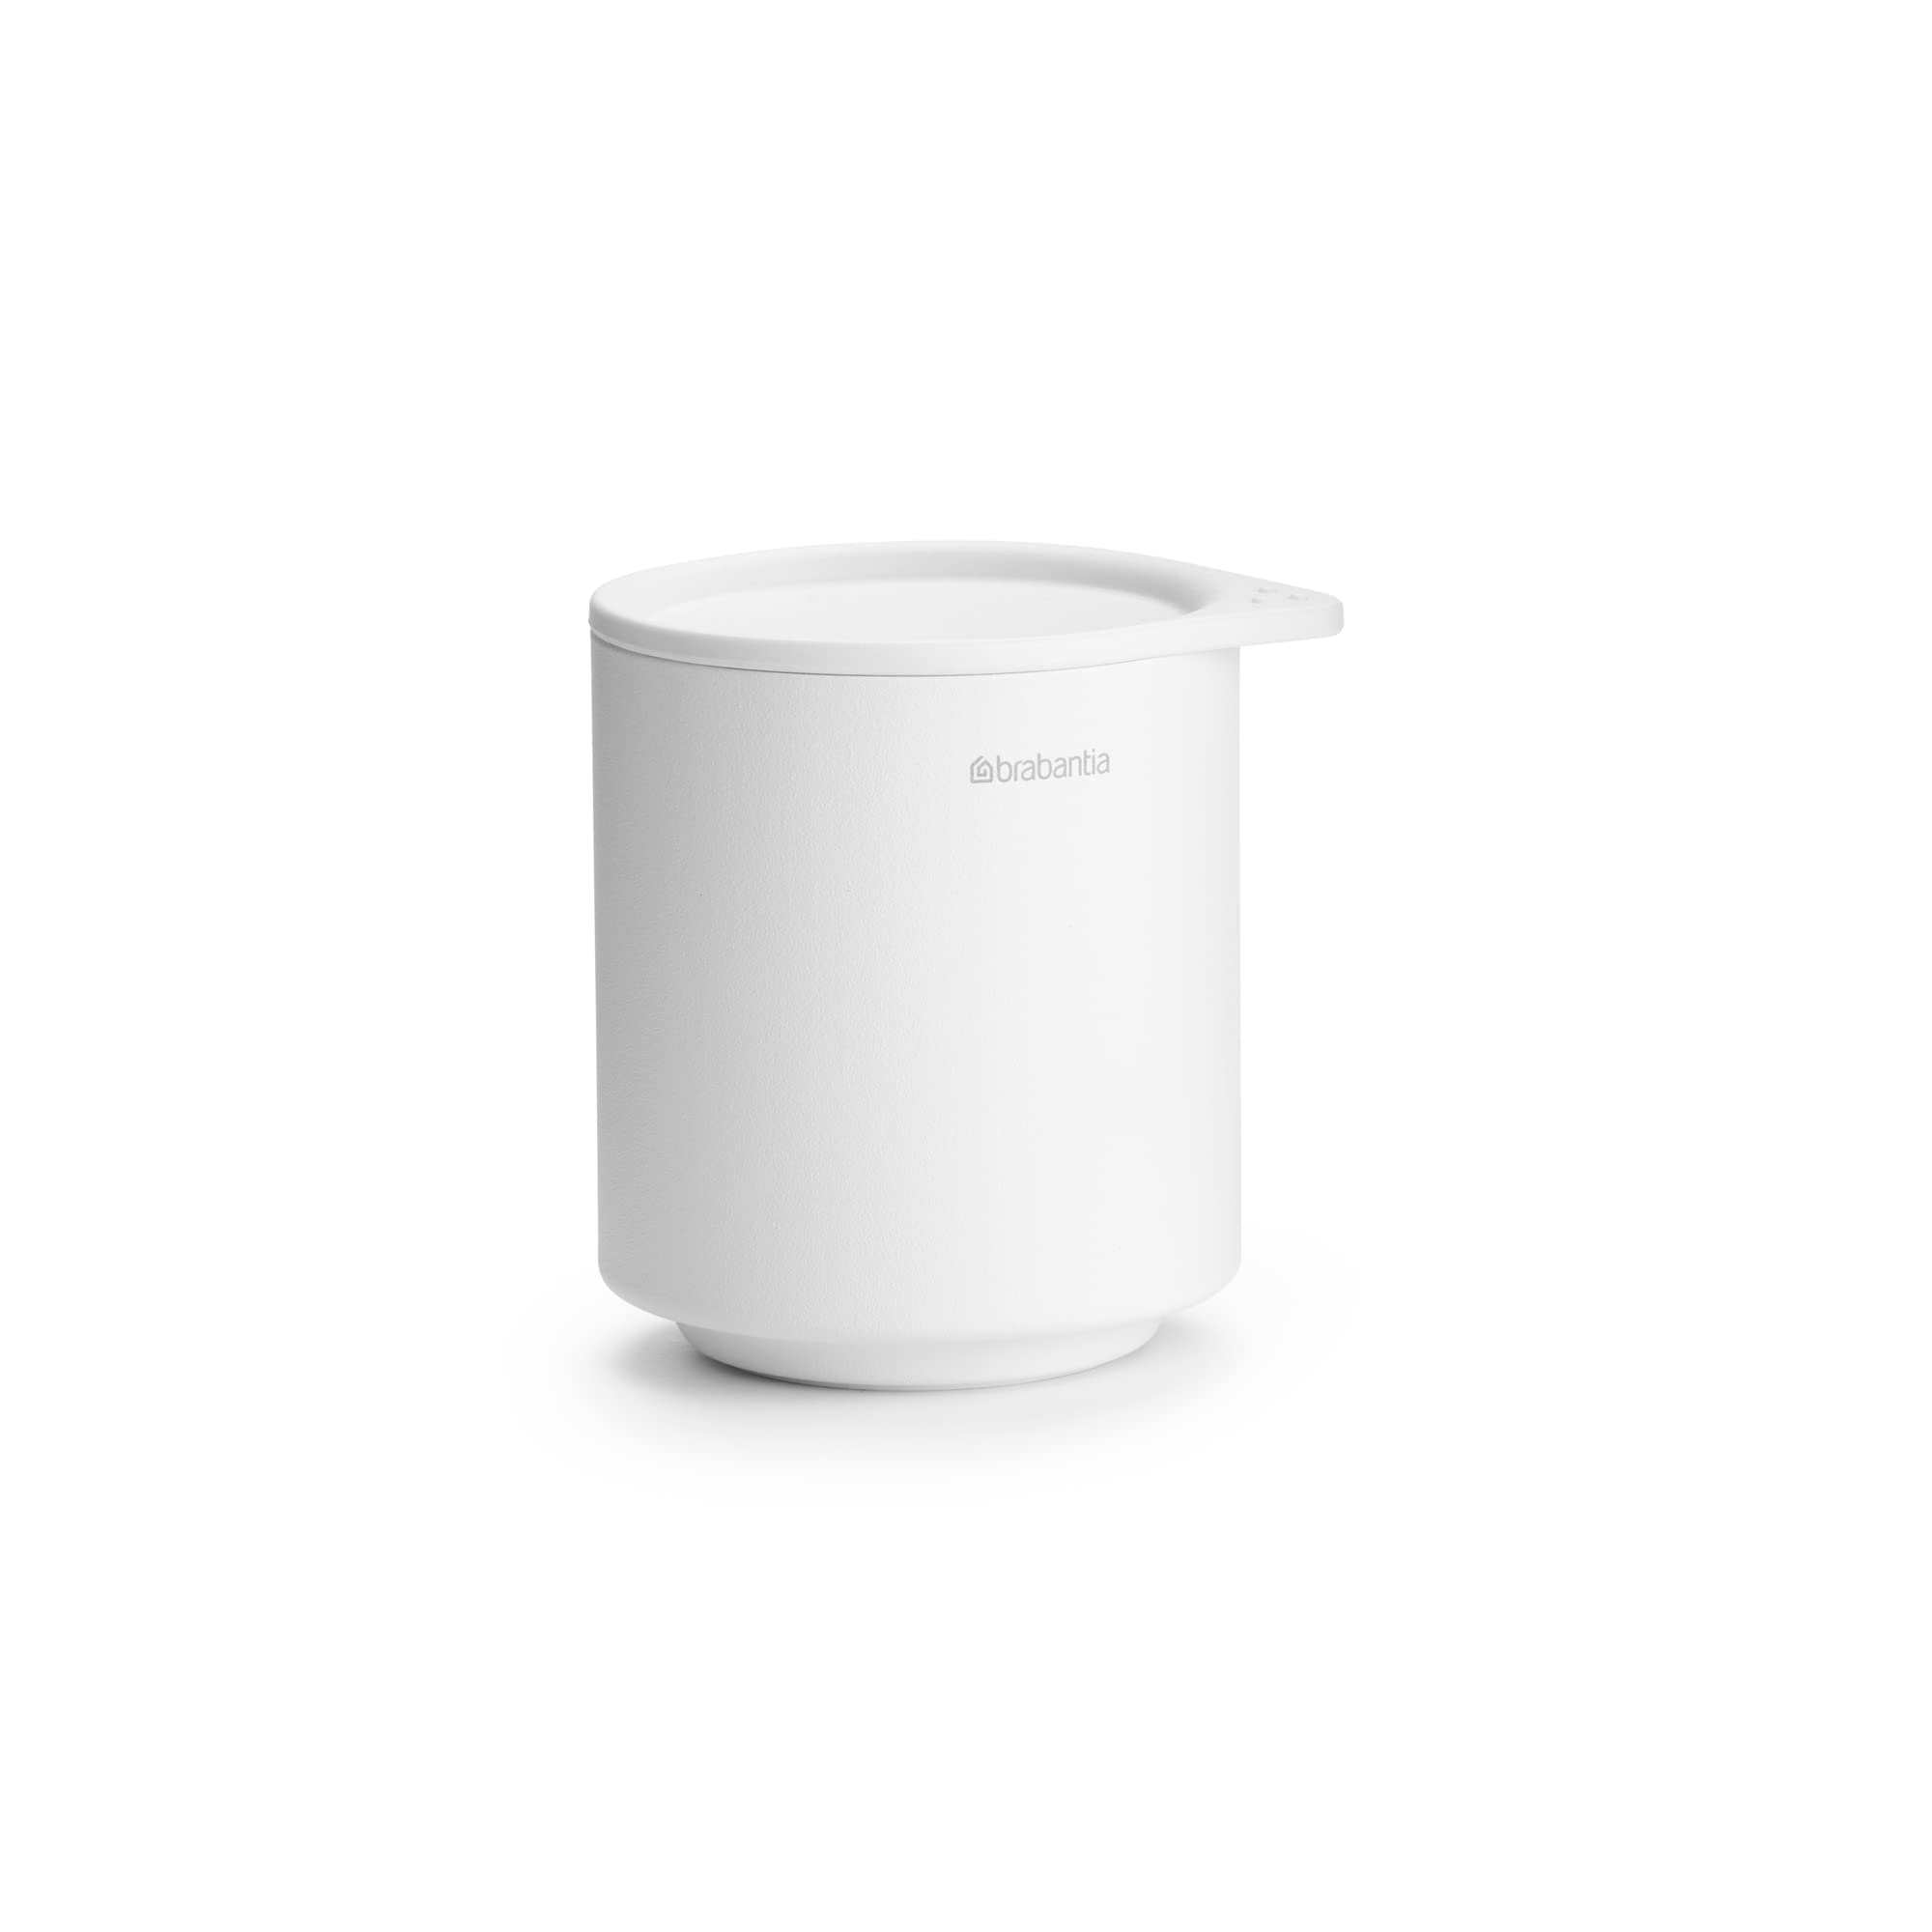 Brabantia - Mindset Aufbewahrungstöpfchen - zum Organisieren kleiner Gegenstände - Hygienischer Soft-Touch-Deckel - Korrosionsbeständig - Badezimmerzubehör - Fresh White - 9,5 x 8 x 9,5 cm